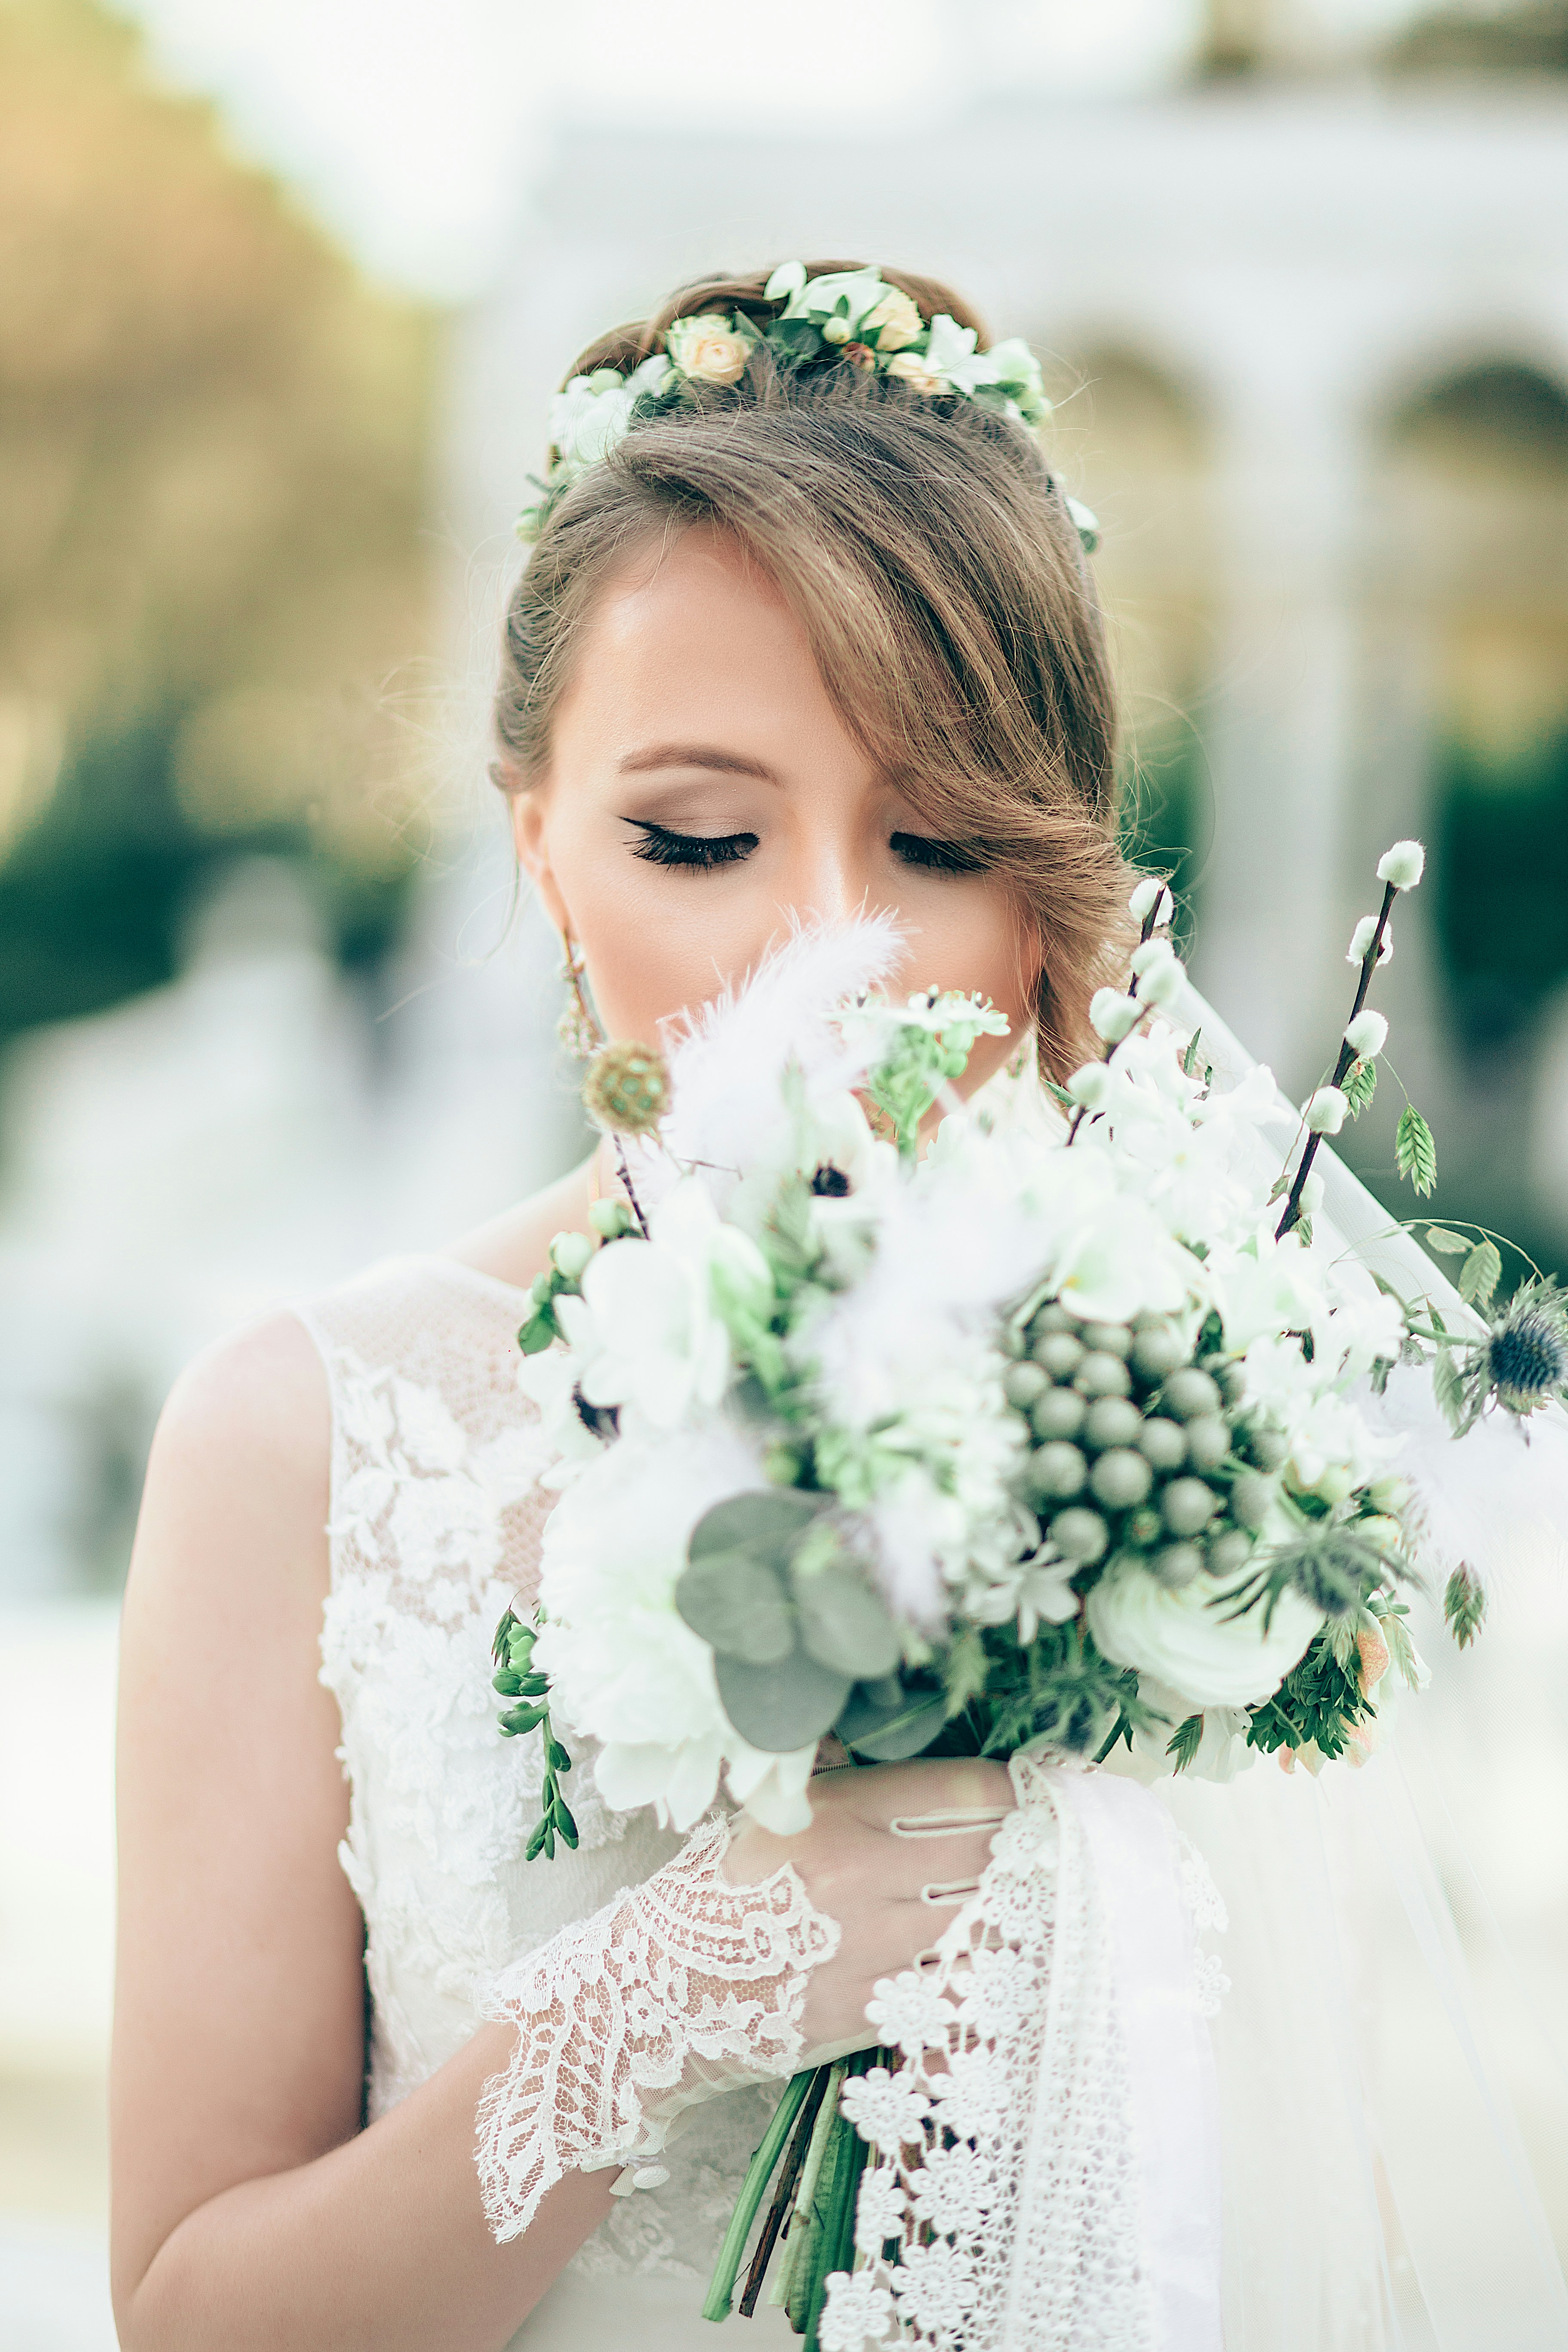 Wedding Planning Advice: Bouquet Toss and Garter Toss Song Choices